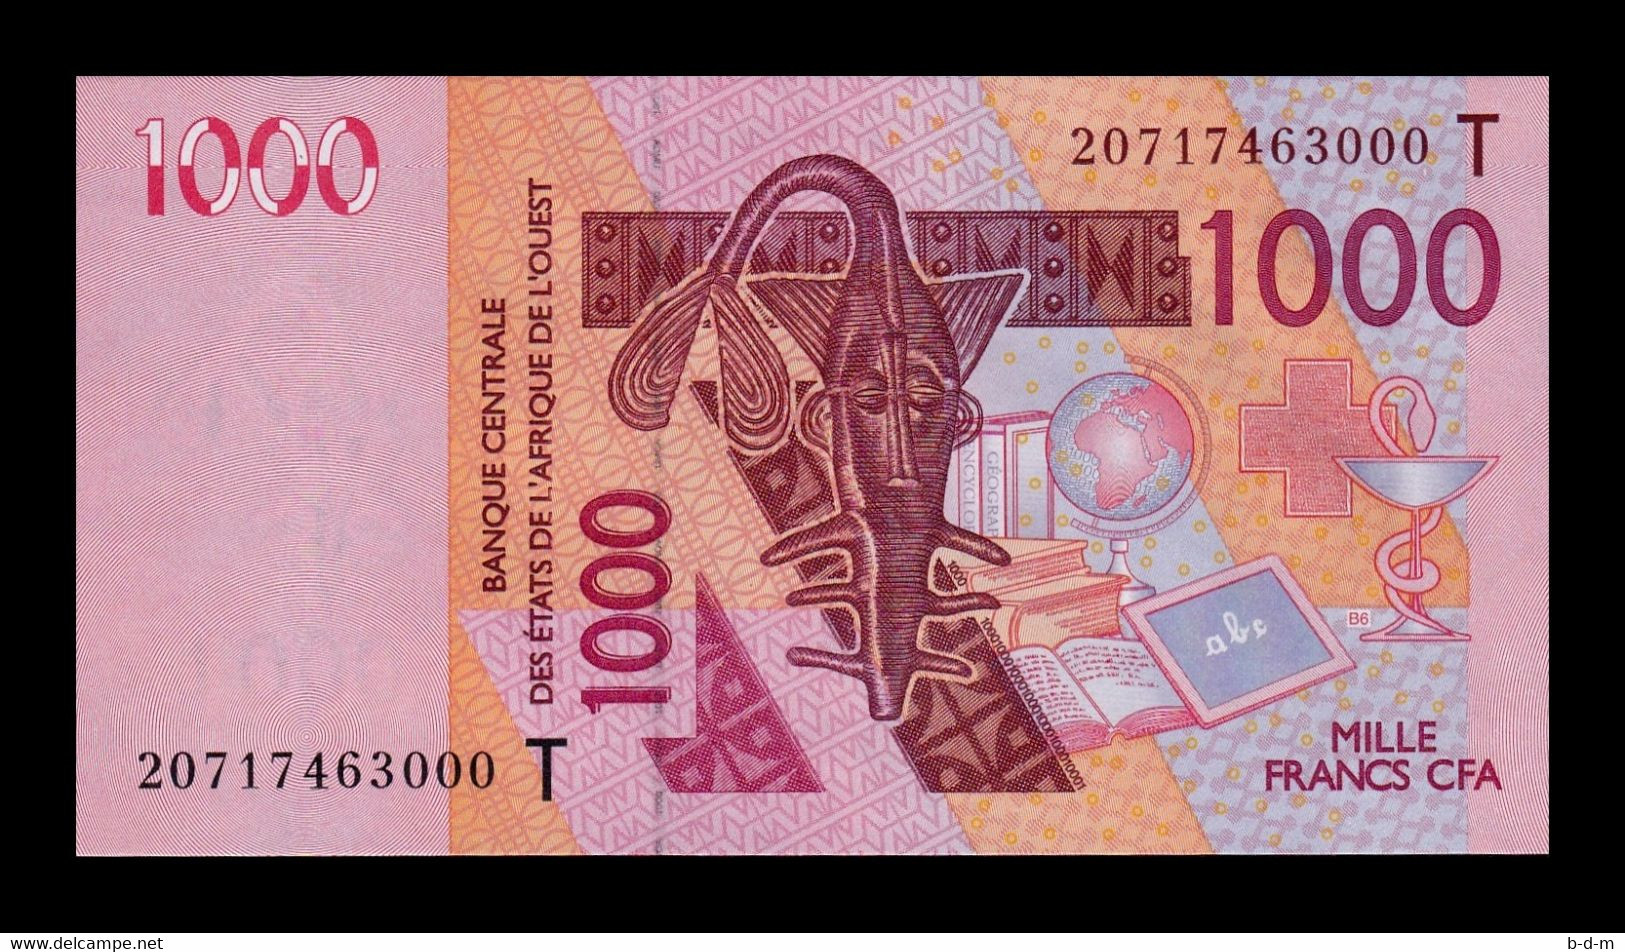 Togocom - Si on te donnait 1 million de francs CFA